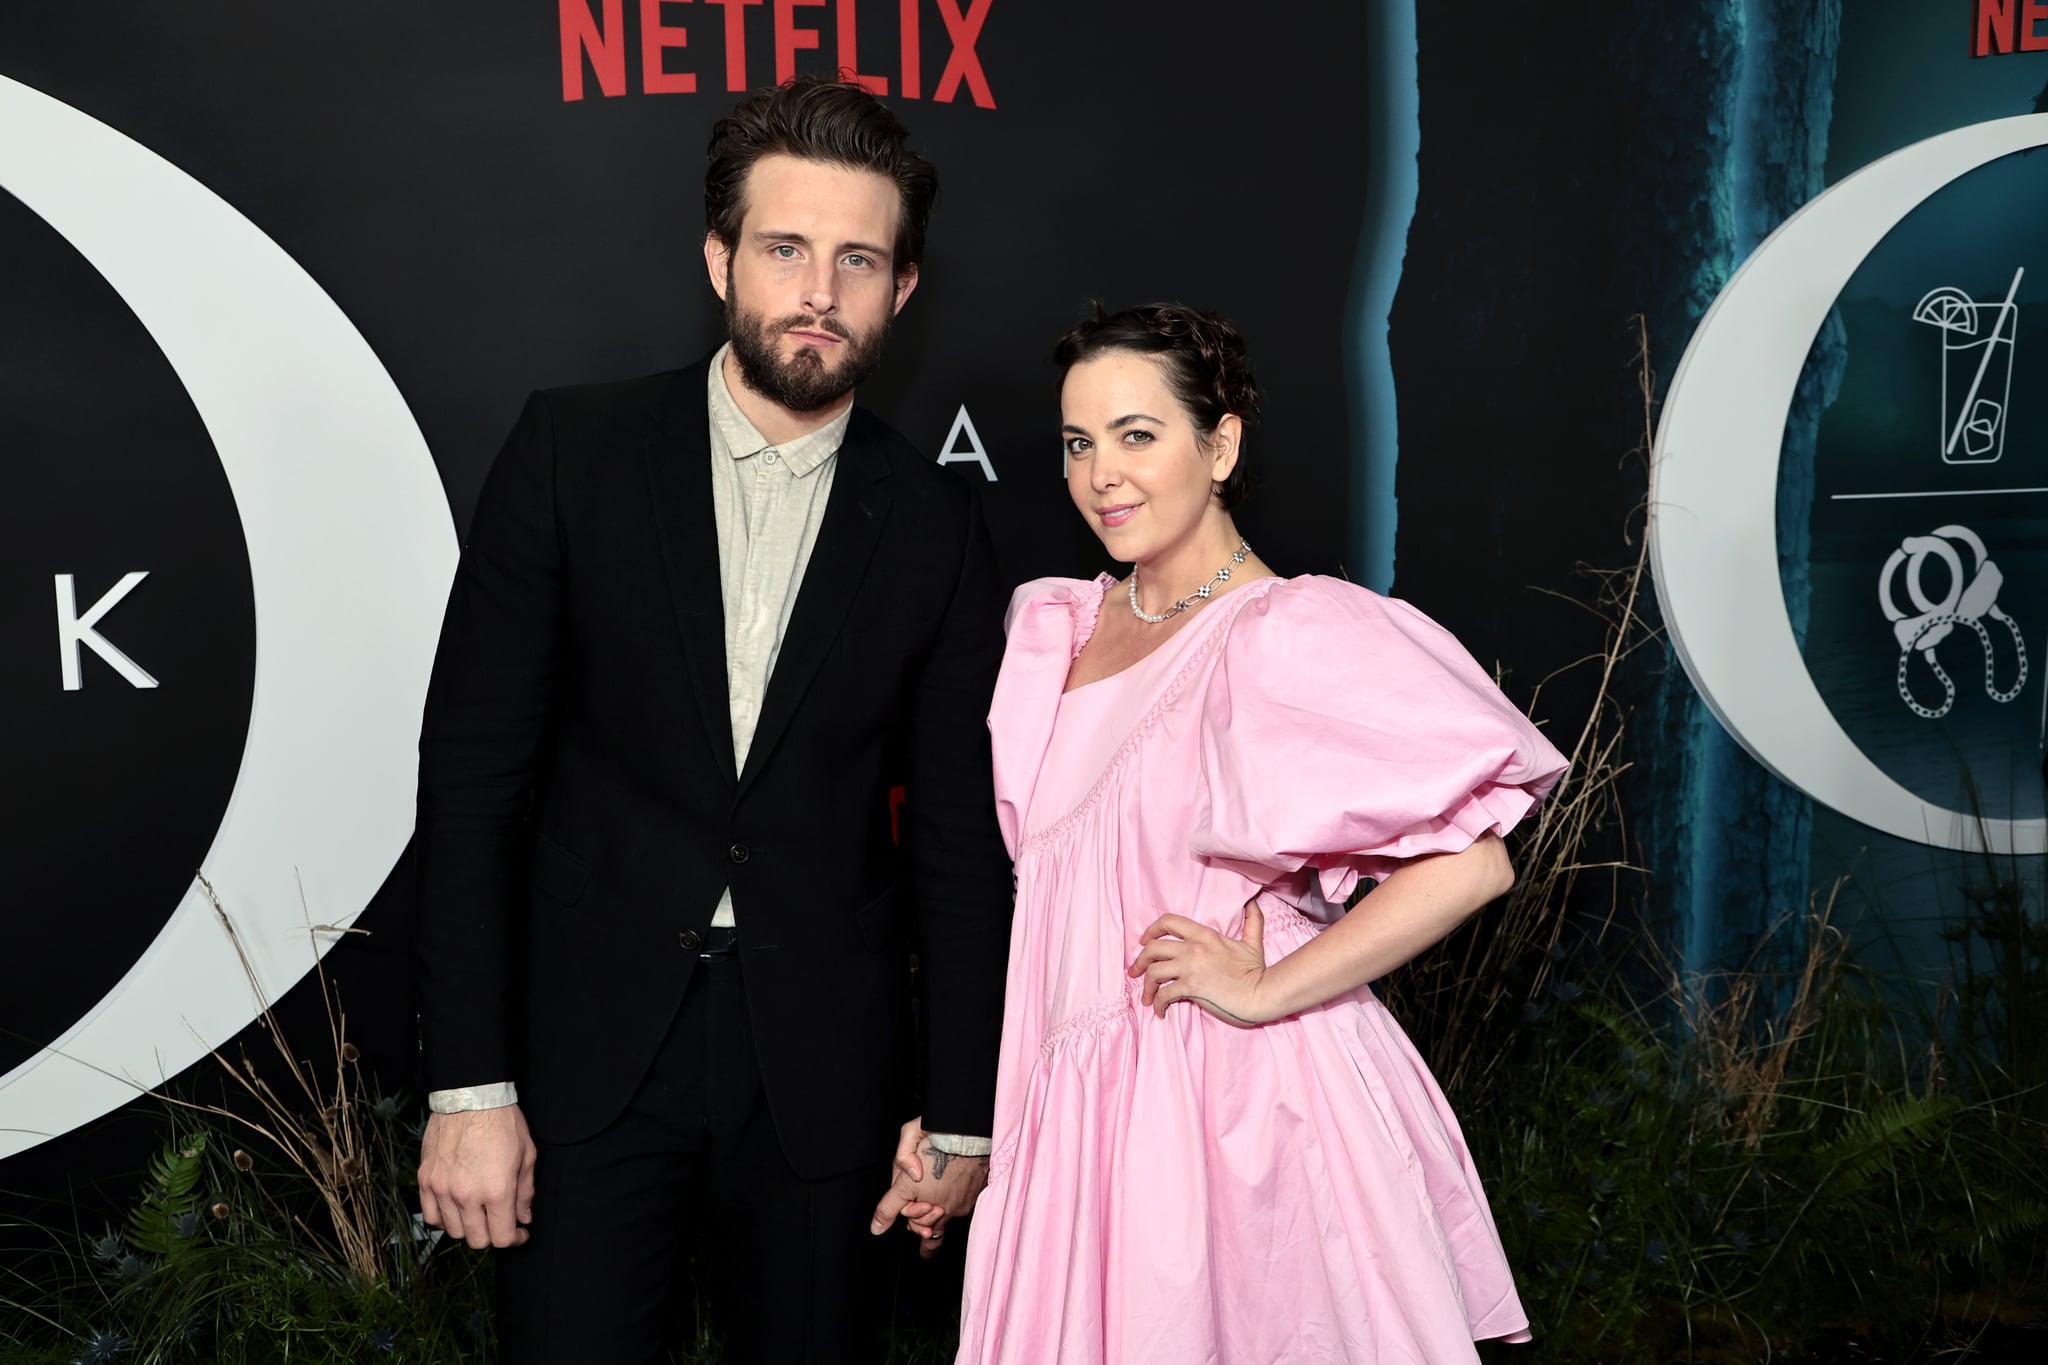 NOWY JORK, NOWY JORK - 21 KWIETNIA: Nico Tortorella i Bethany C. Meyers biorą udział w imprezie Netflixa pt 